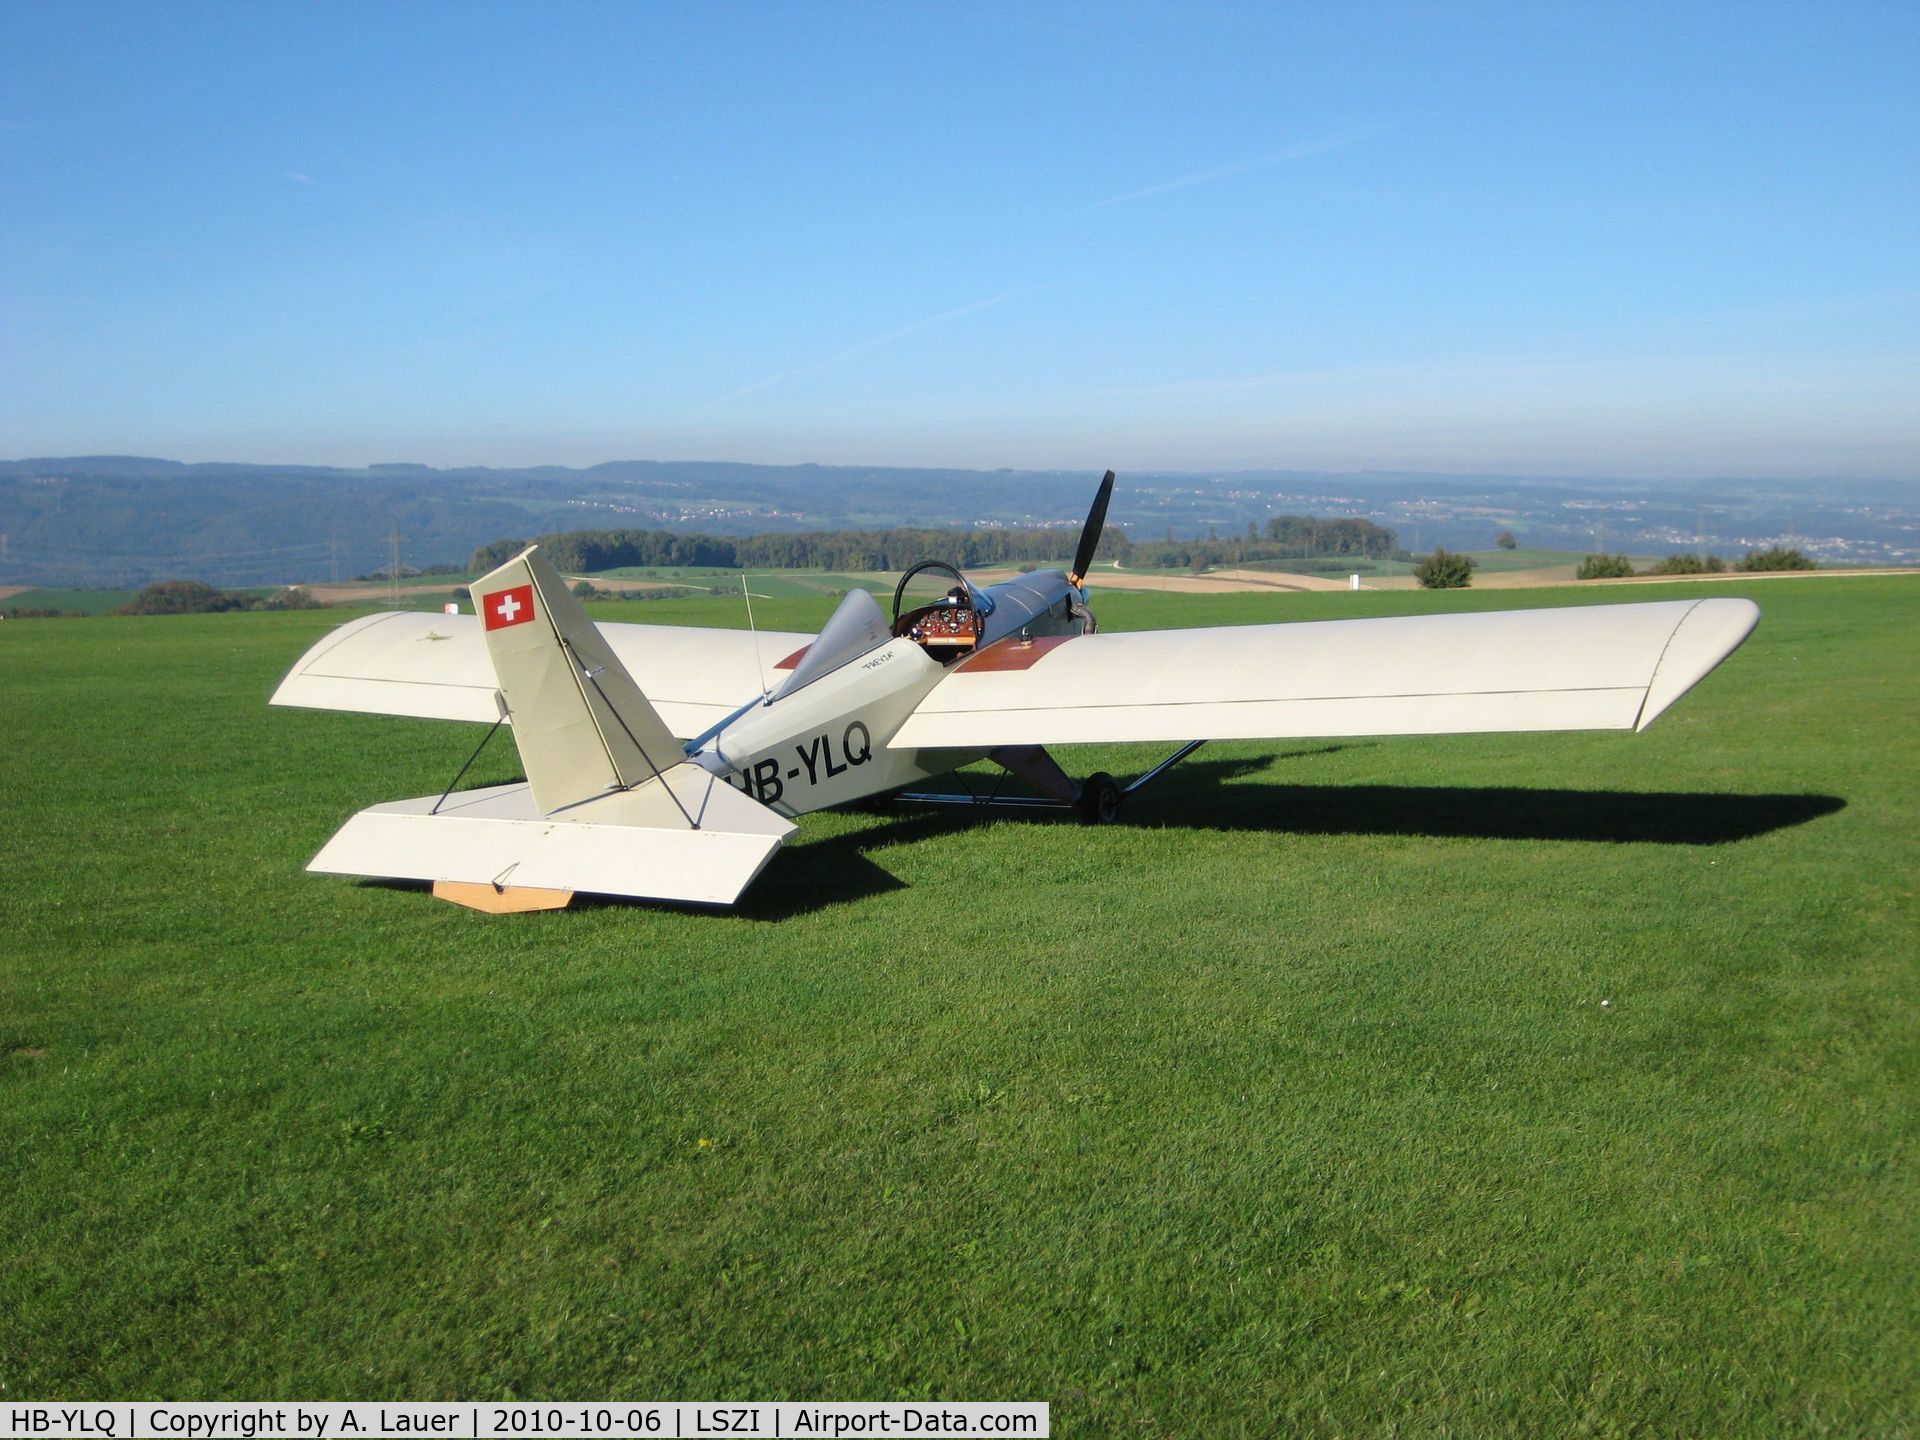 HB-YLQ, 2004 Team Mini-Max R1500 C/N 1010, experimental aircraft